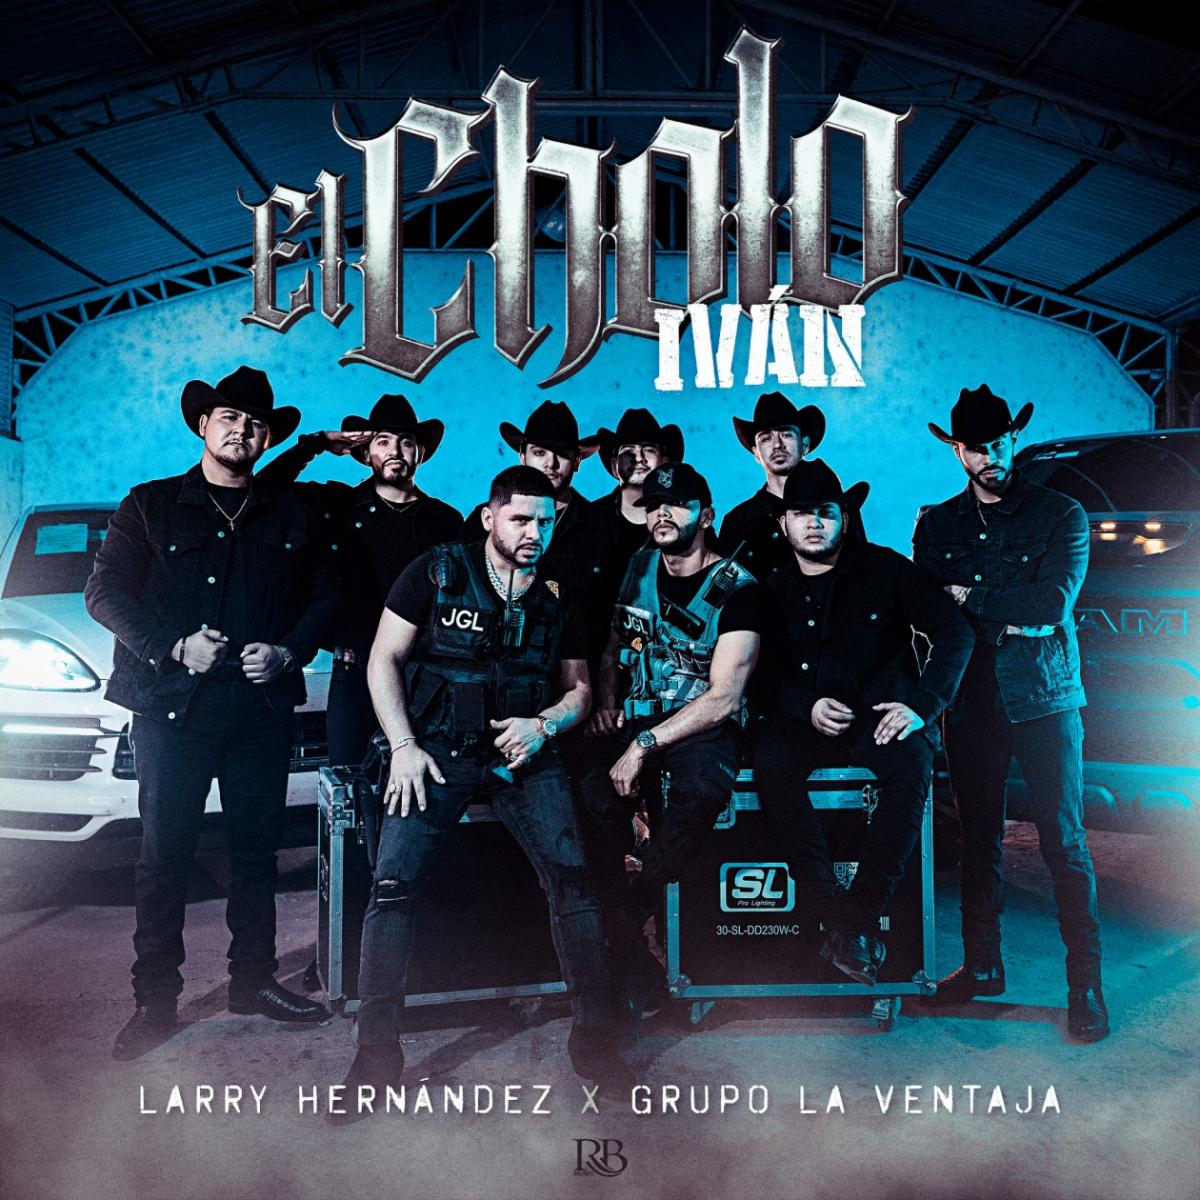 LARRY HERNANDEZ y GRUPO LA VENTAJA lanzan tema juntos “El Cholo Iván”